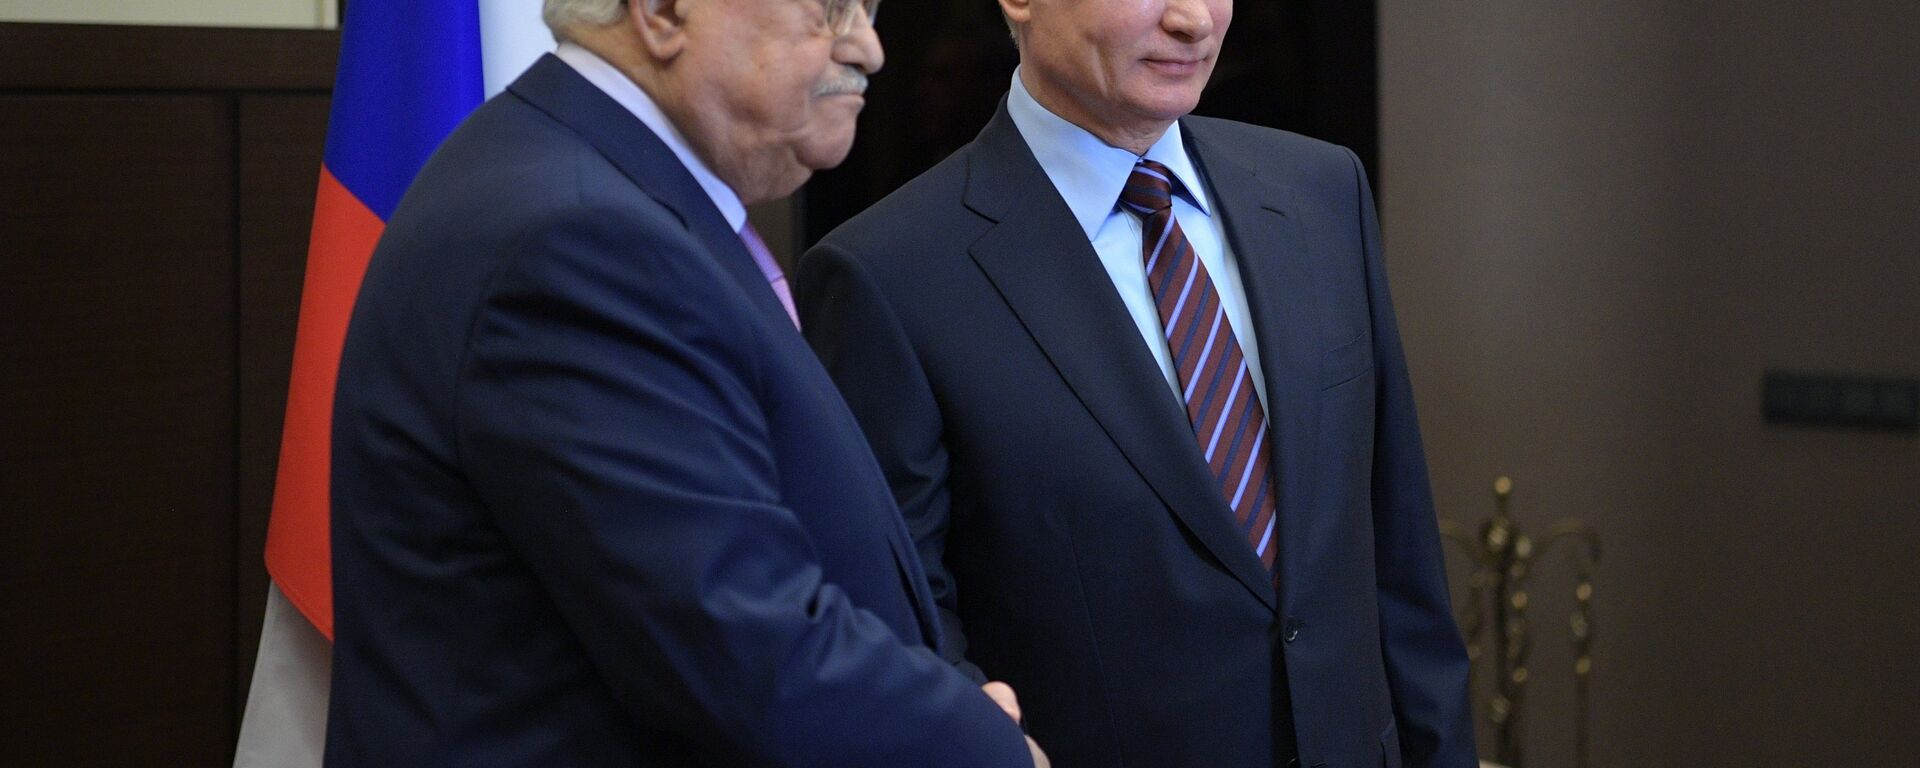 Filistin Devlet Başkanı Mahmud Abbas ve Rusya Devlet Başkanı Vladimir Putin - Sputnik Türkiye, 1920, 30.12.2021